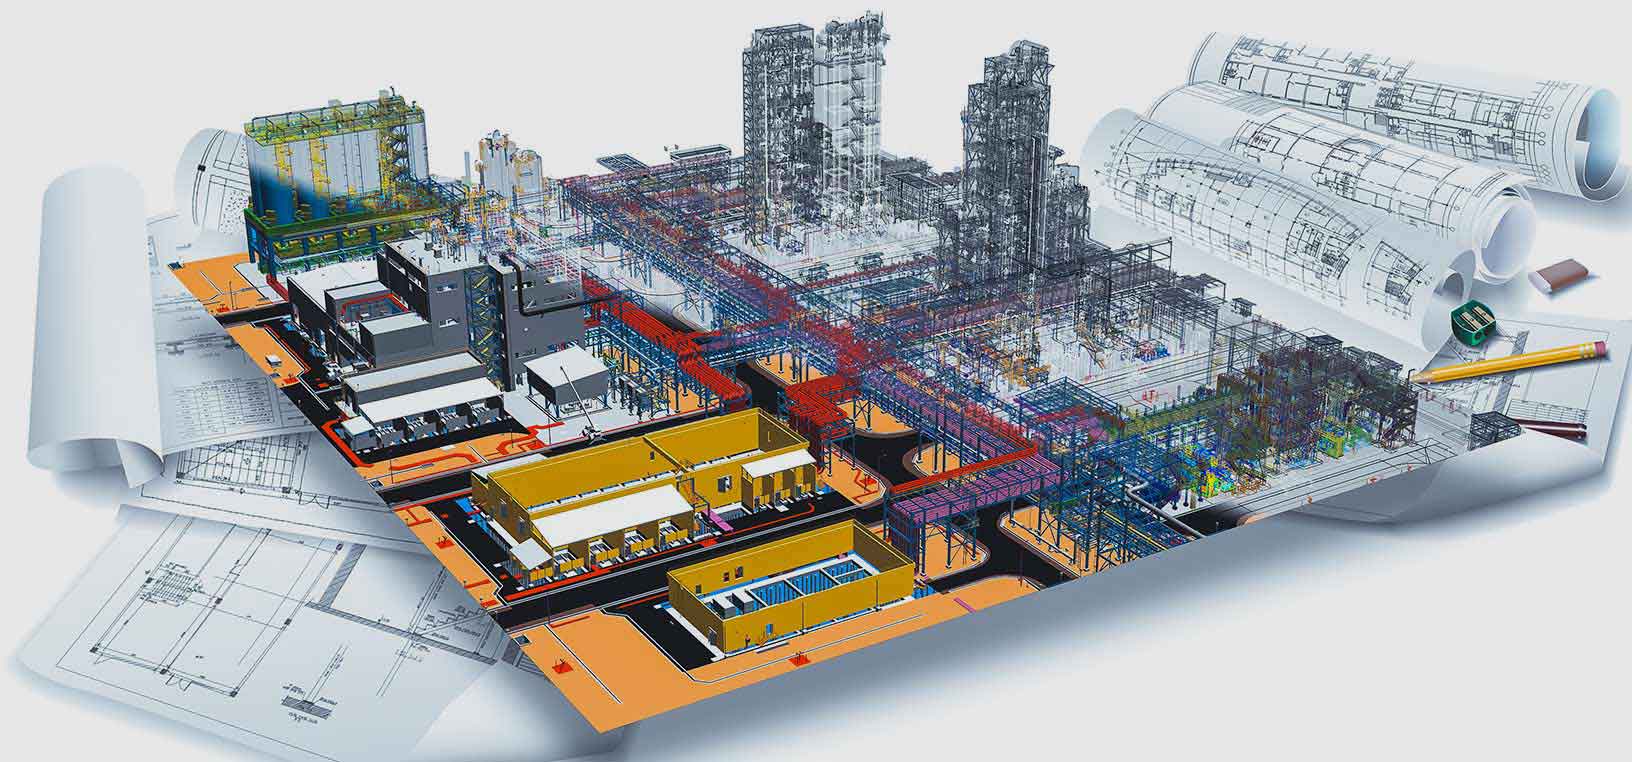 3D-изображение, показывающее различные этапы жизненного цикла строительства завода, от первоначального черно-белого чертежа до завершенной модели с использованием программного обеспечения Hexagon